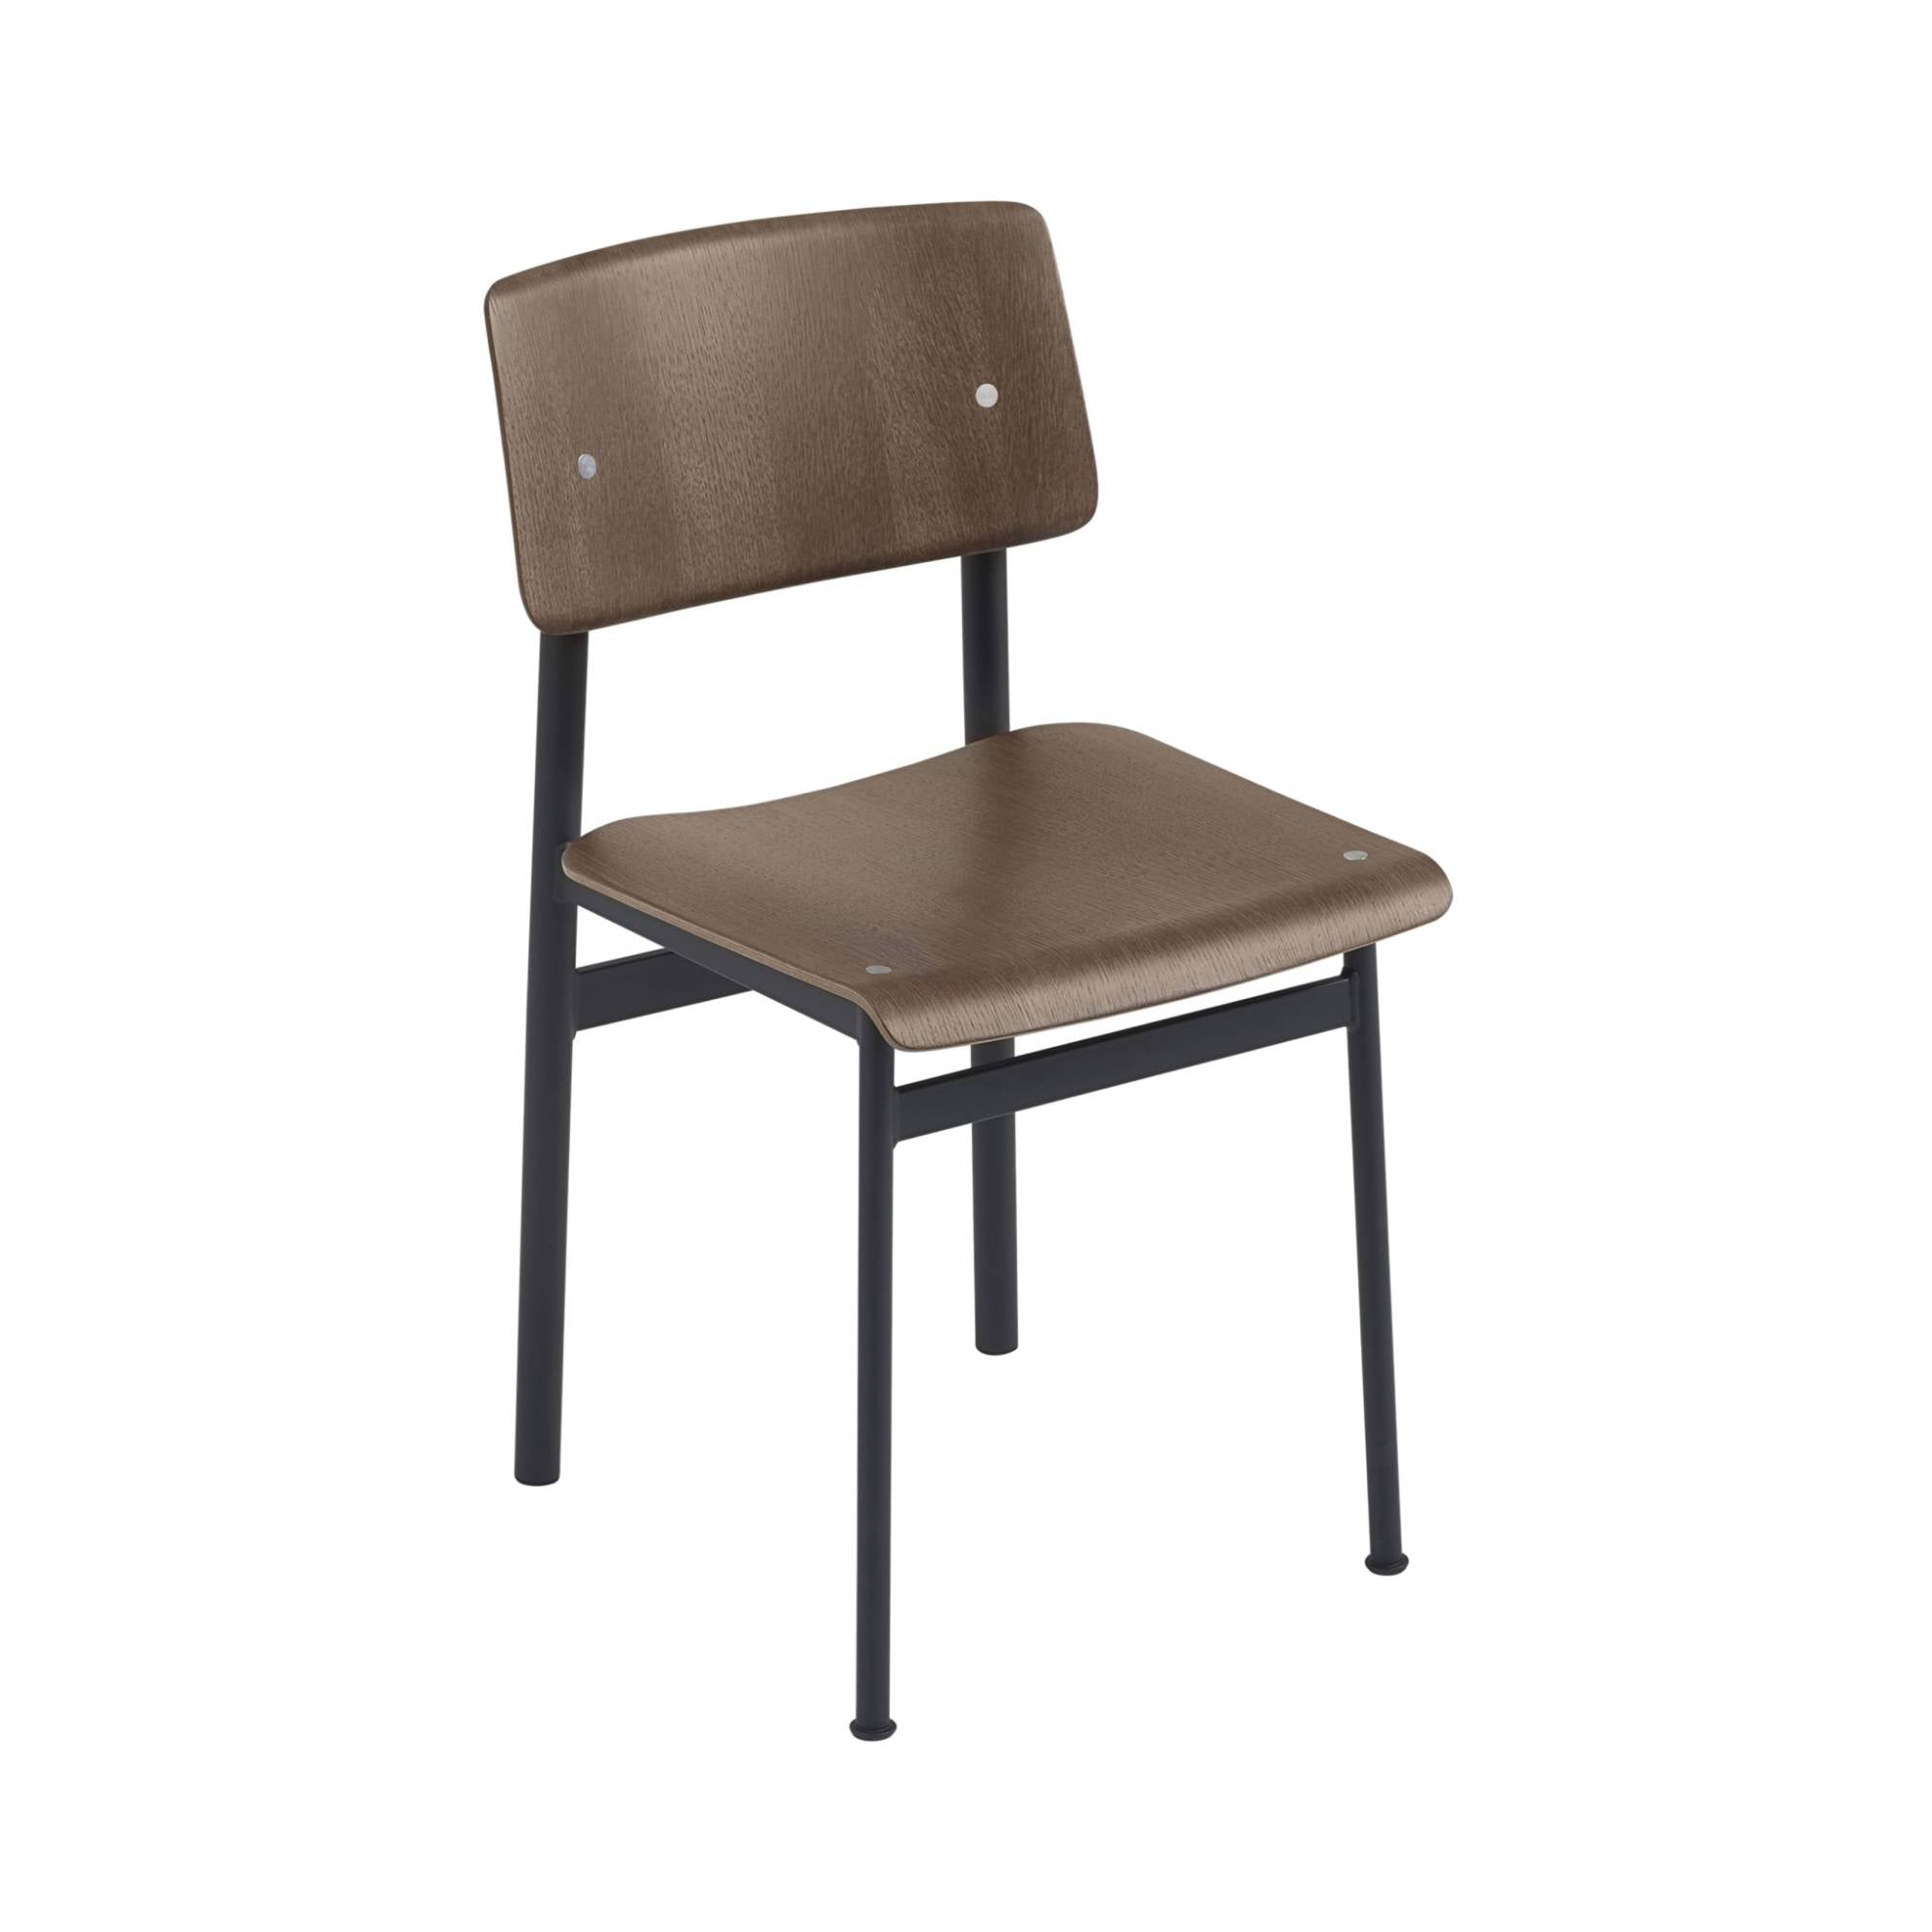 Loft Chair: Black + Dark Stained Brown